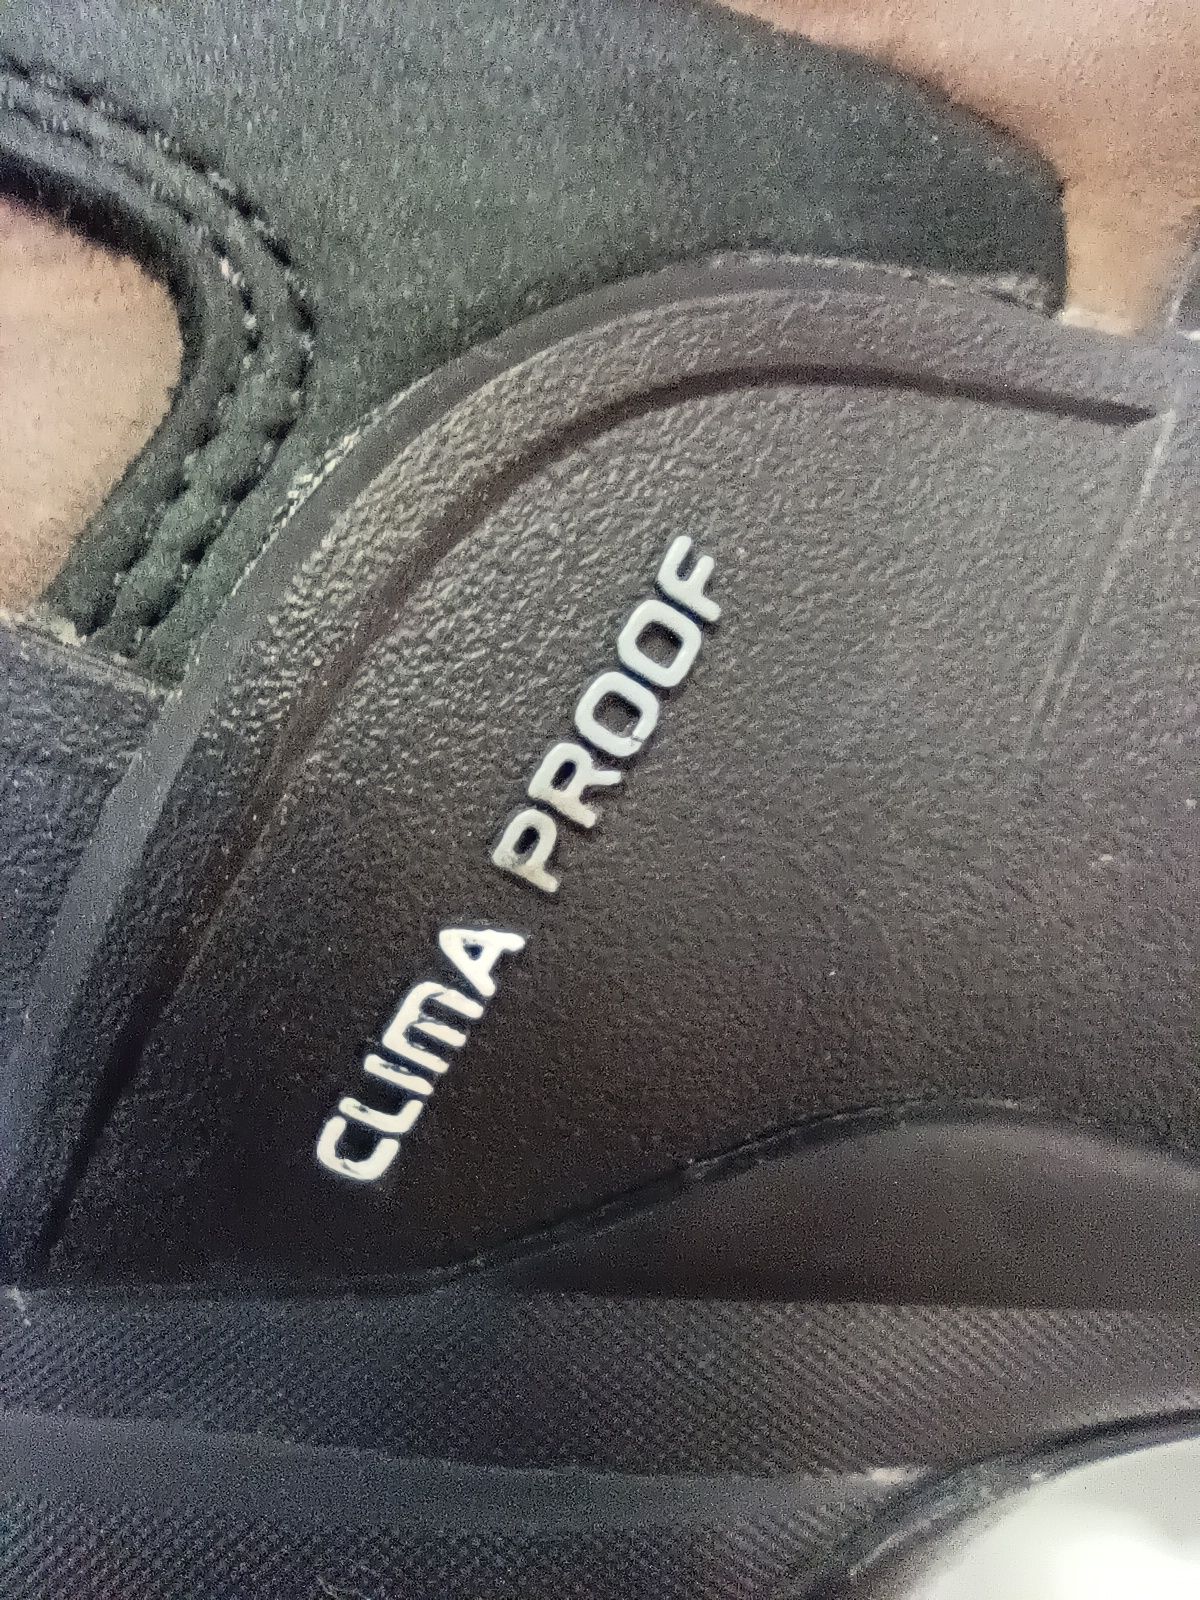 Adidas ClimaProof n. 44